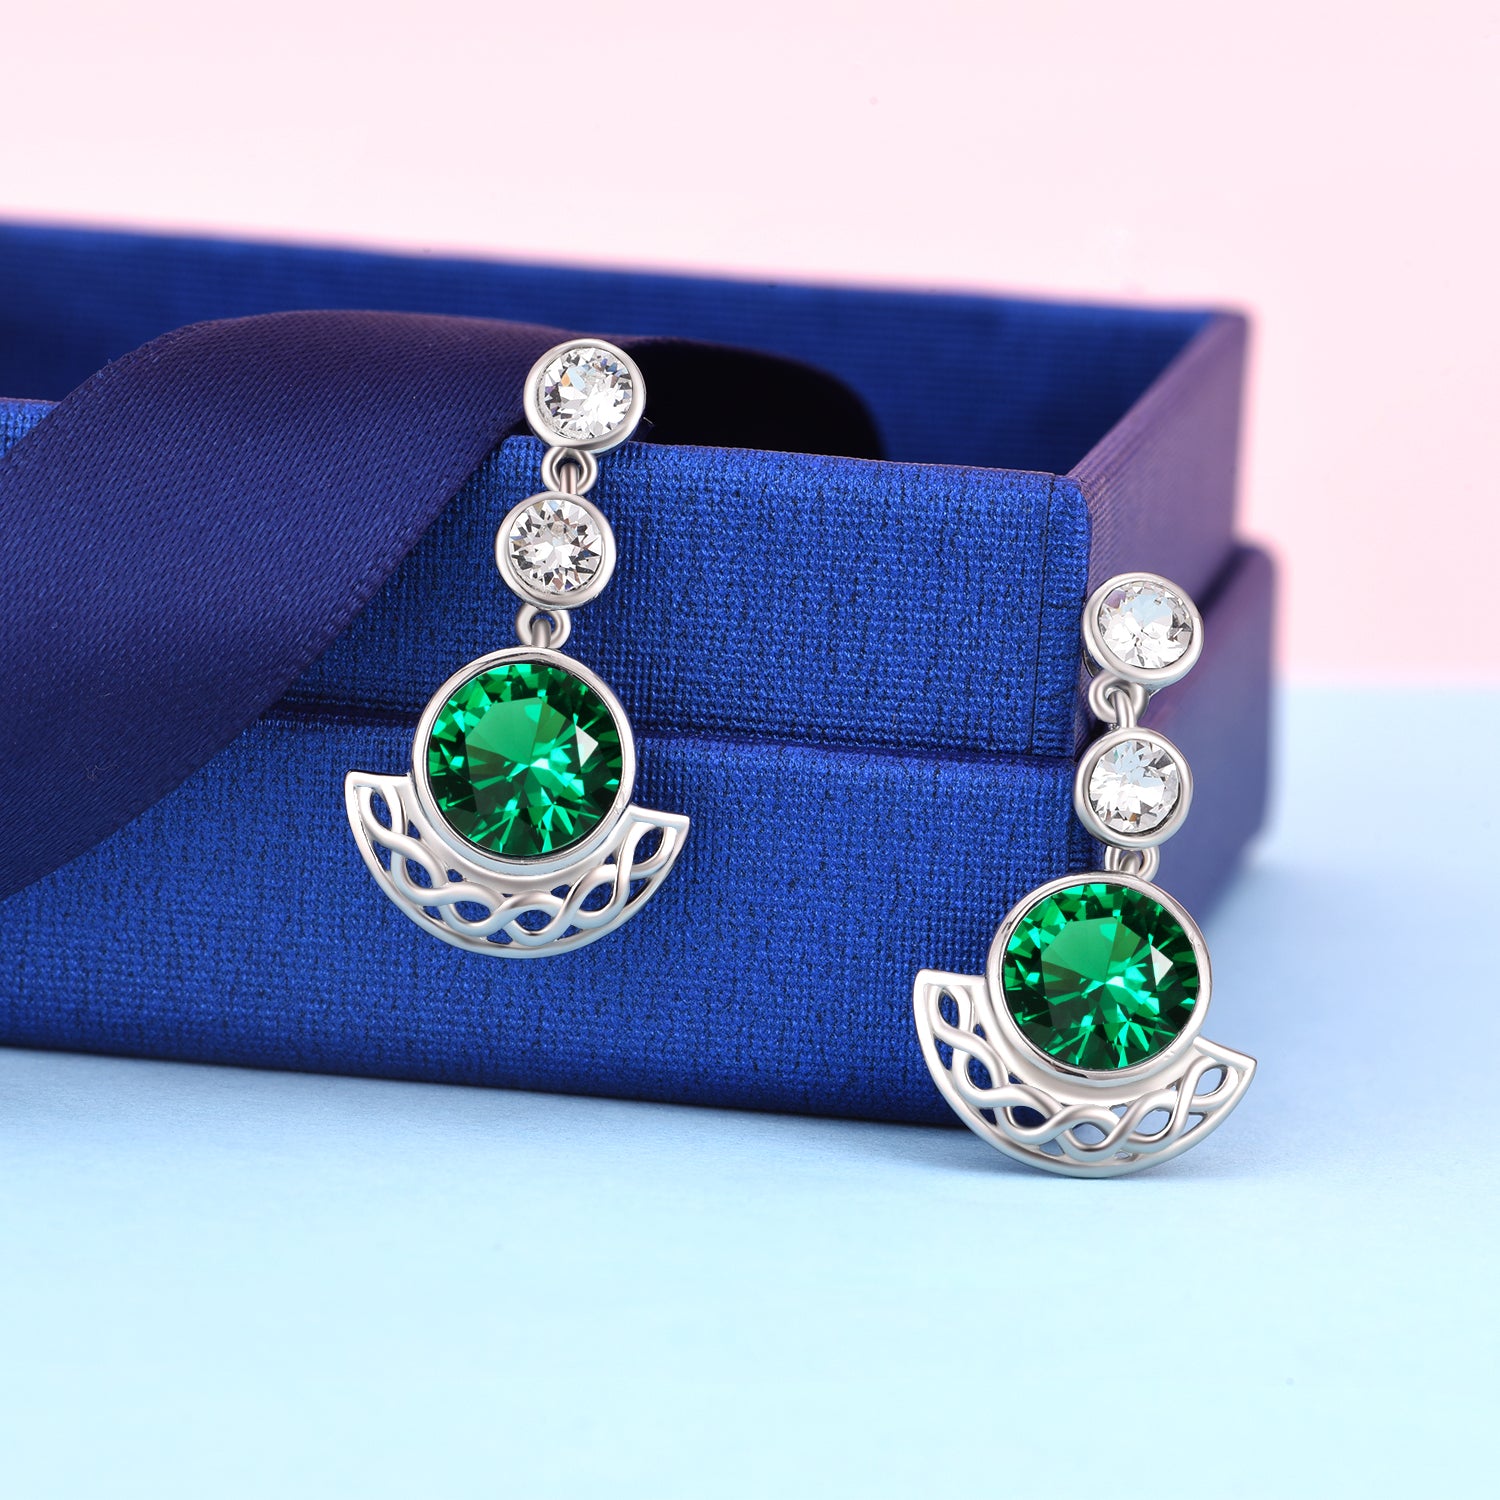 Hot Sale Elegant Women Jewelry Cubic Zirconia Colorful Drop Earrings